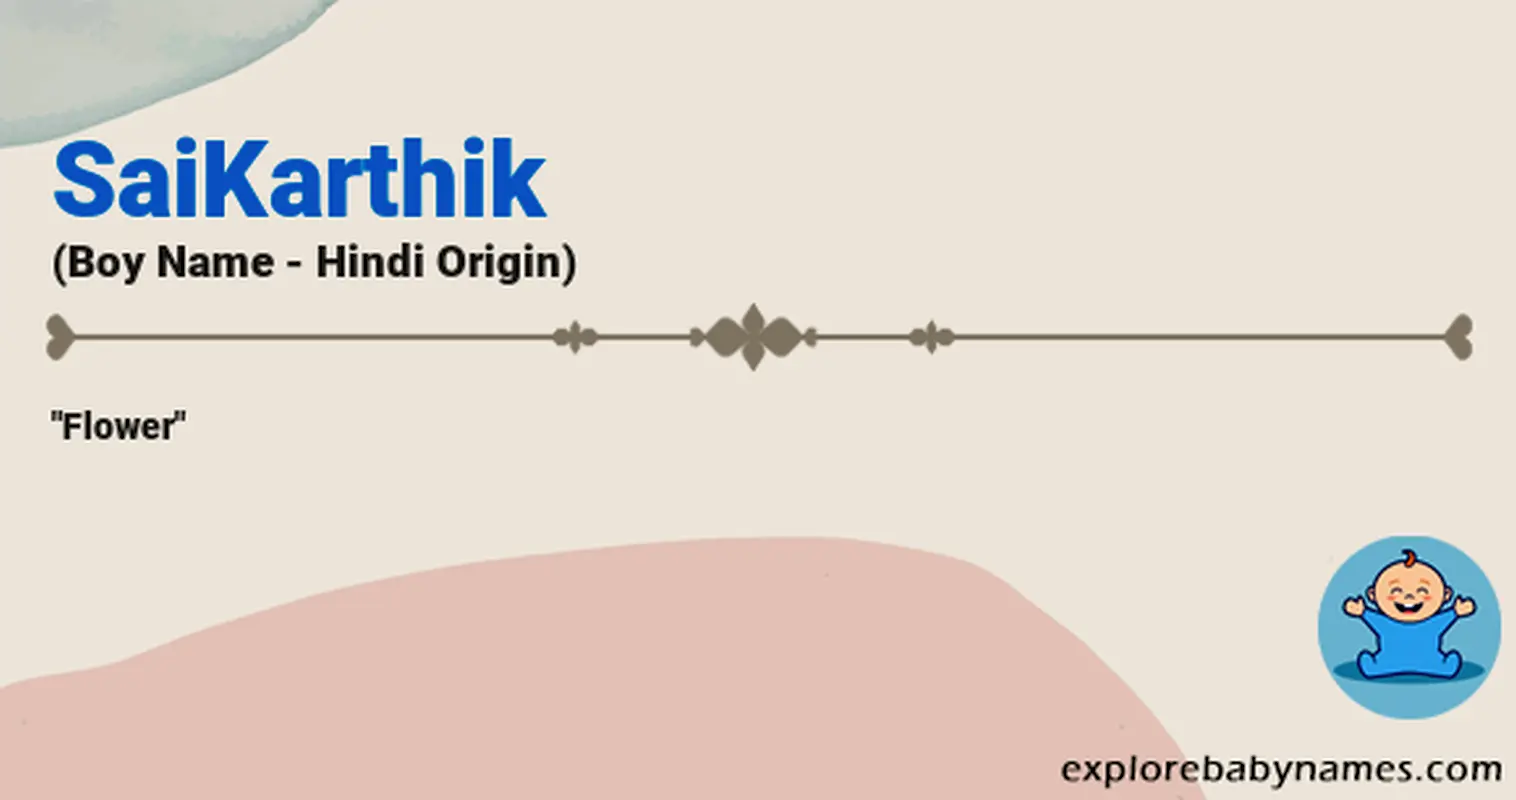 Meaning of SaiKarthik